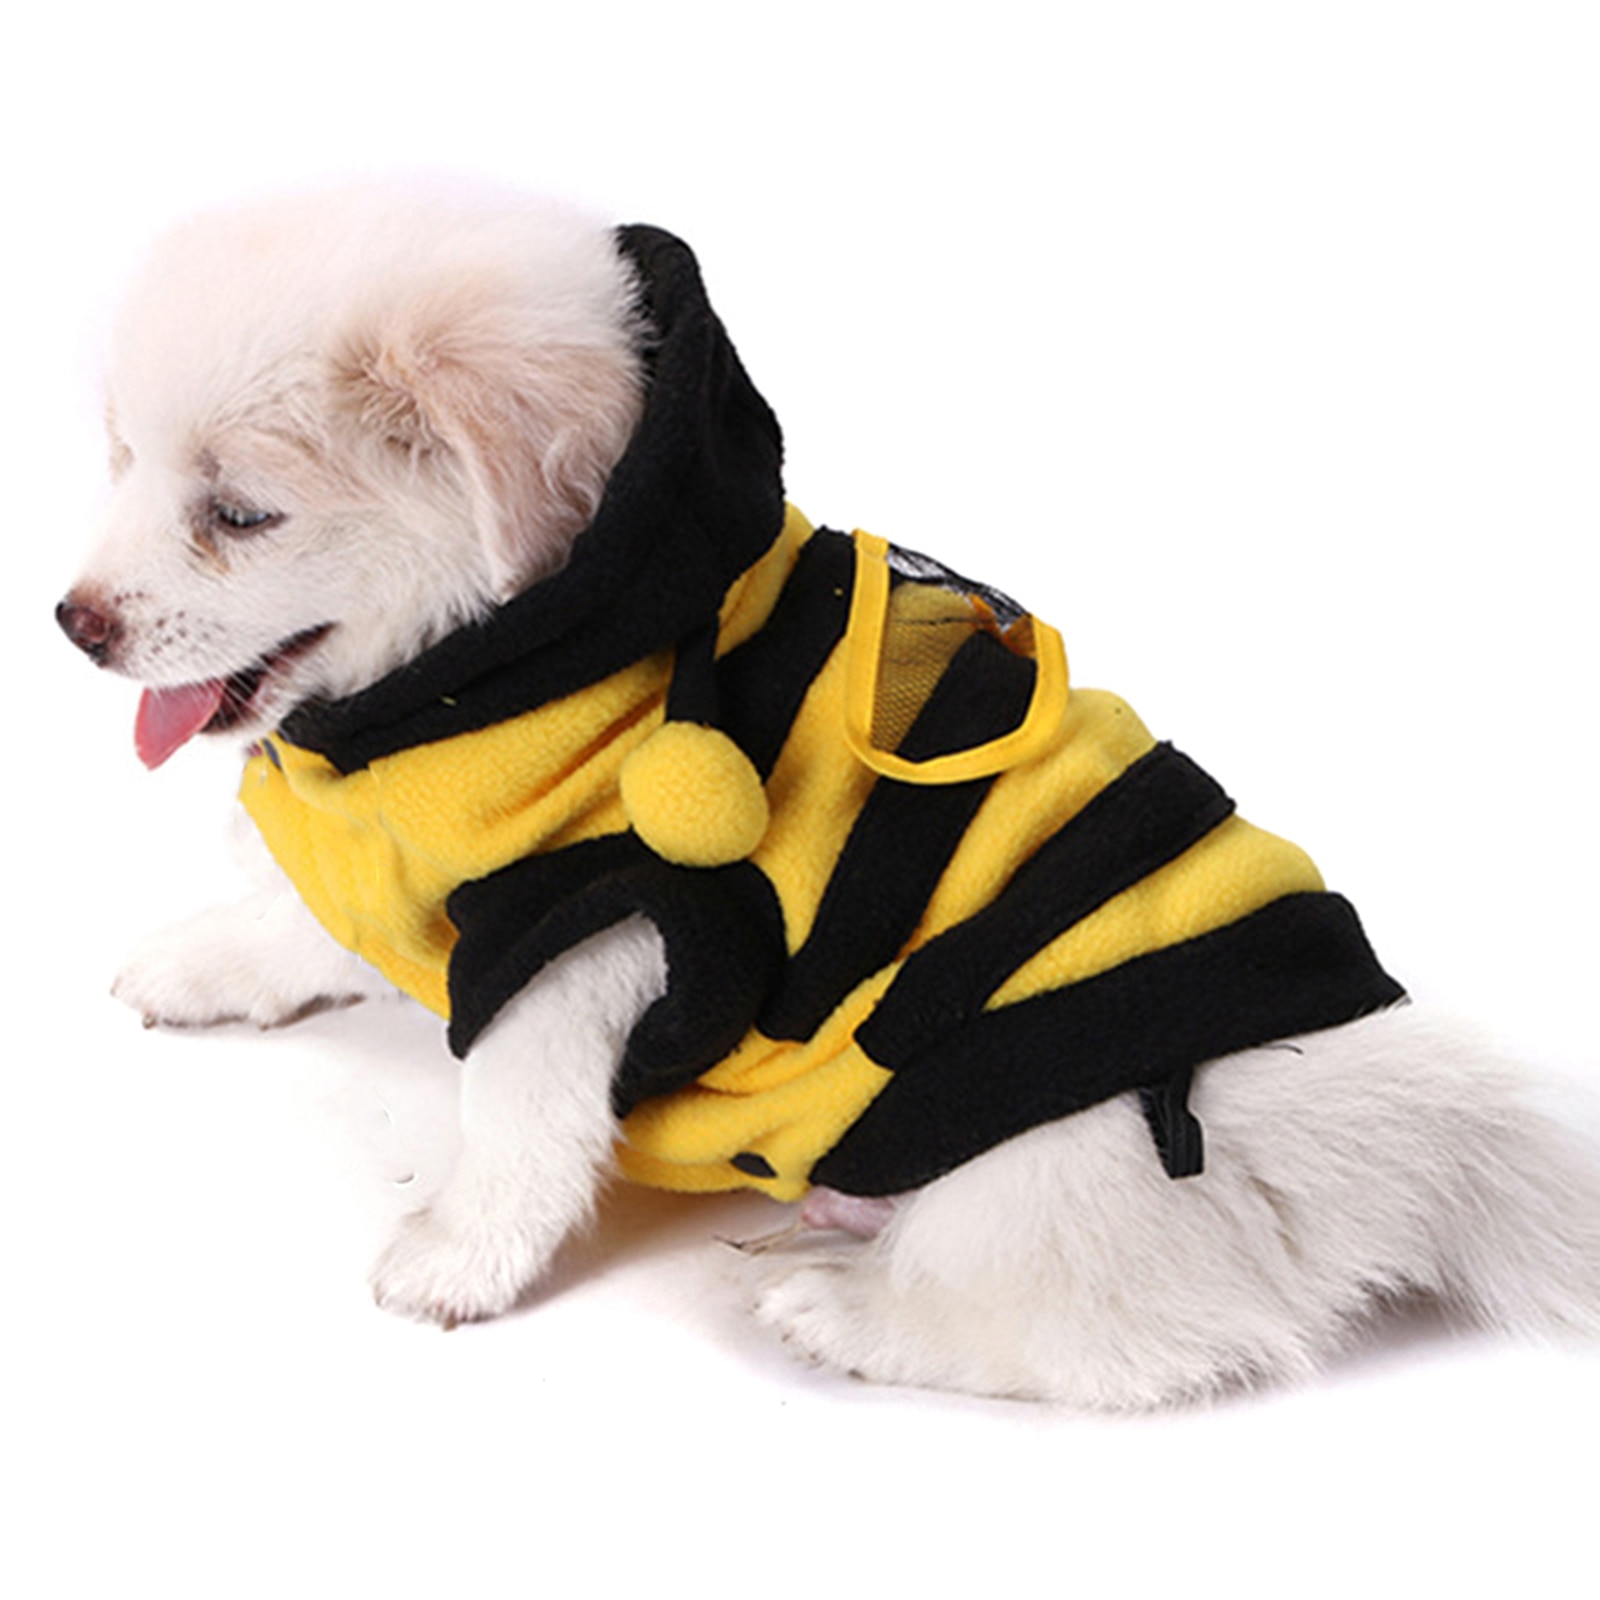 Hond Kleding Bee Kostuum Puppy Hooded Pet Puppy Coat Kleding Kleding Outfit Fleece Kleding Hond Kat Hoodie Fancy Kostuum